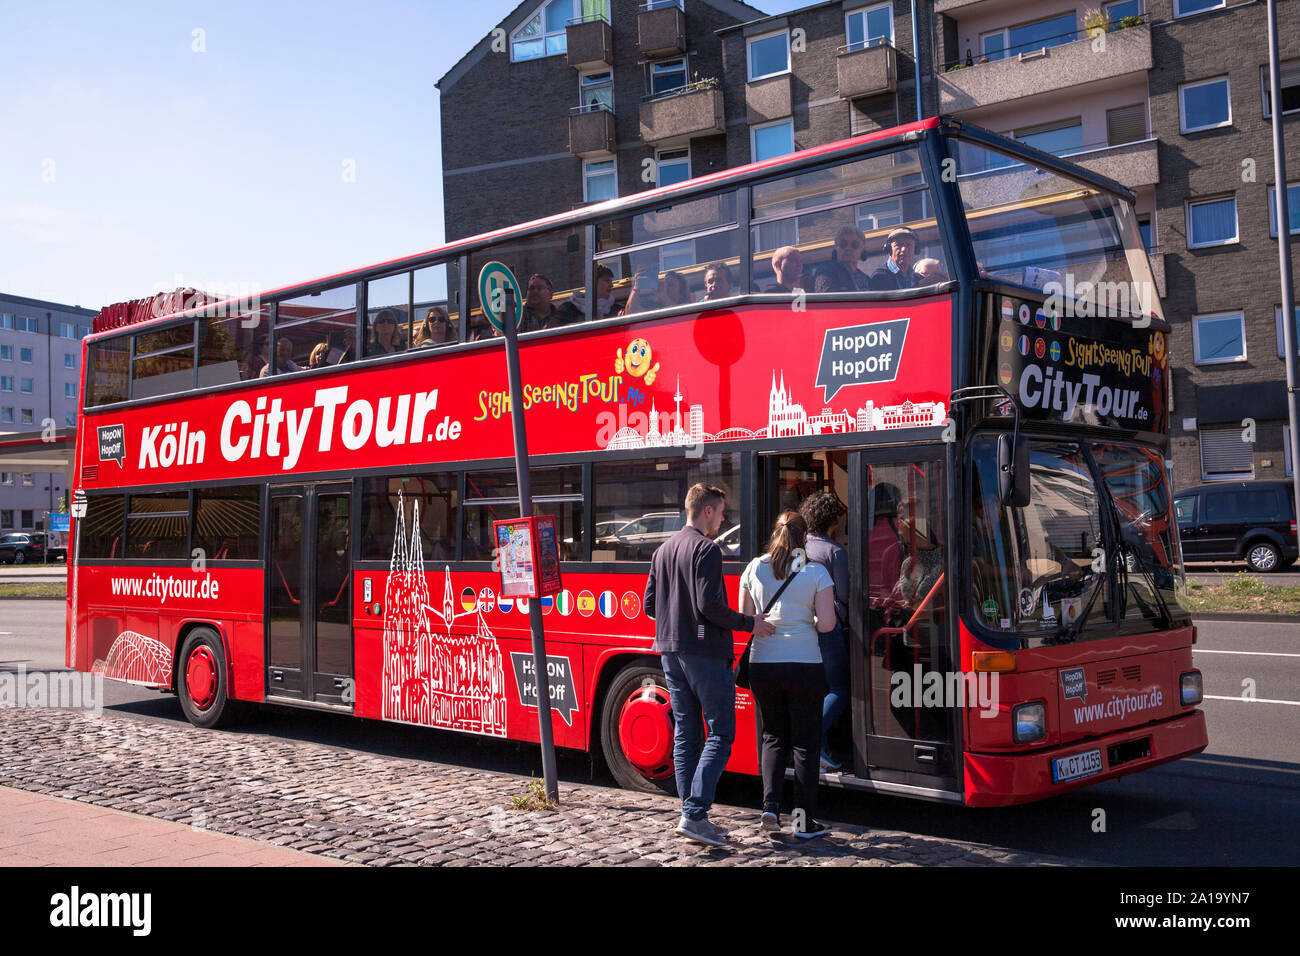 I turisti facendo un giro panoramico in autobus a due piani, Colonia, Germania. Touristen machen in einem Doppelstockbus eine Stadtrundfahrt, Koeln, De Foto Stock